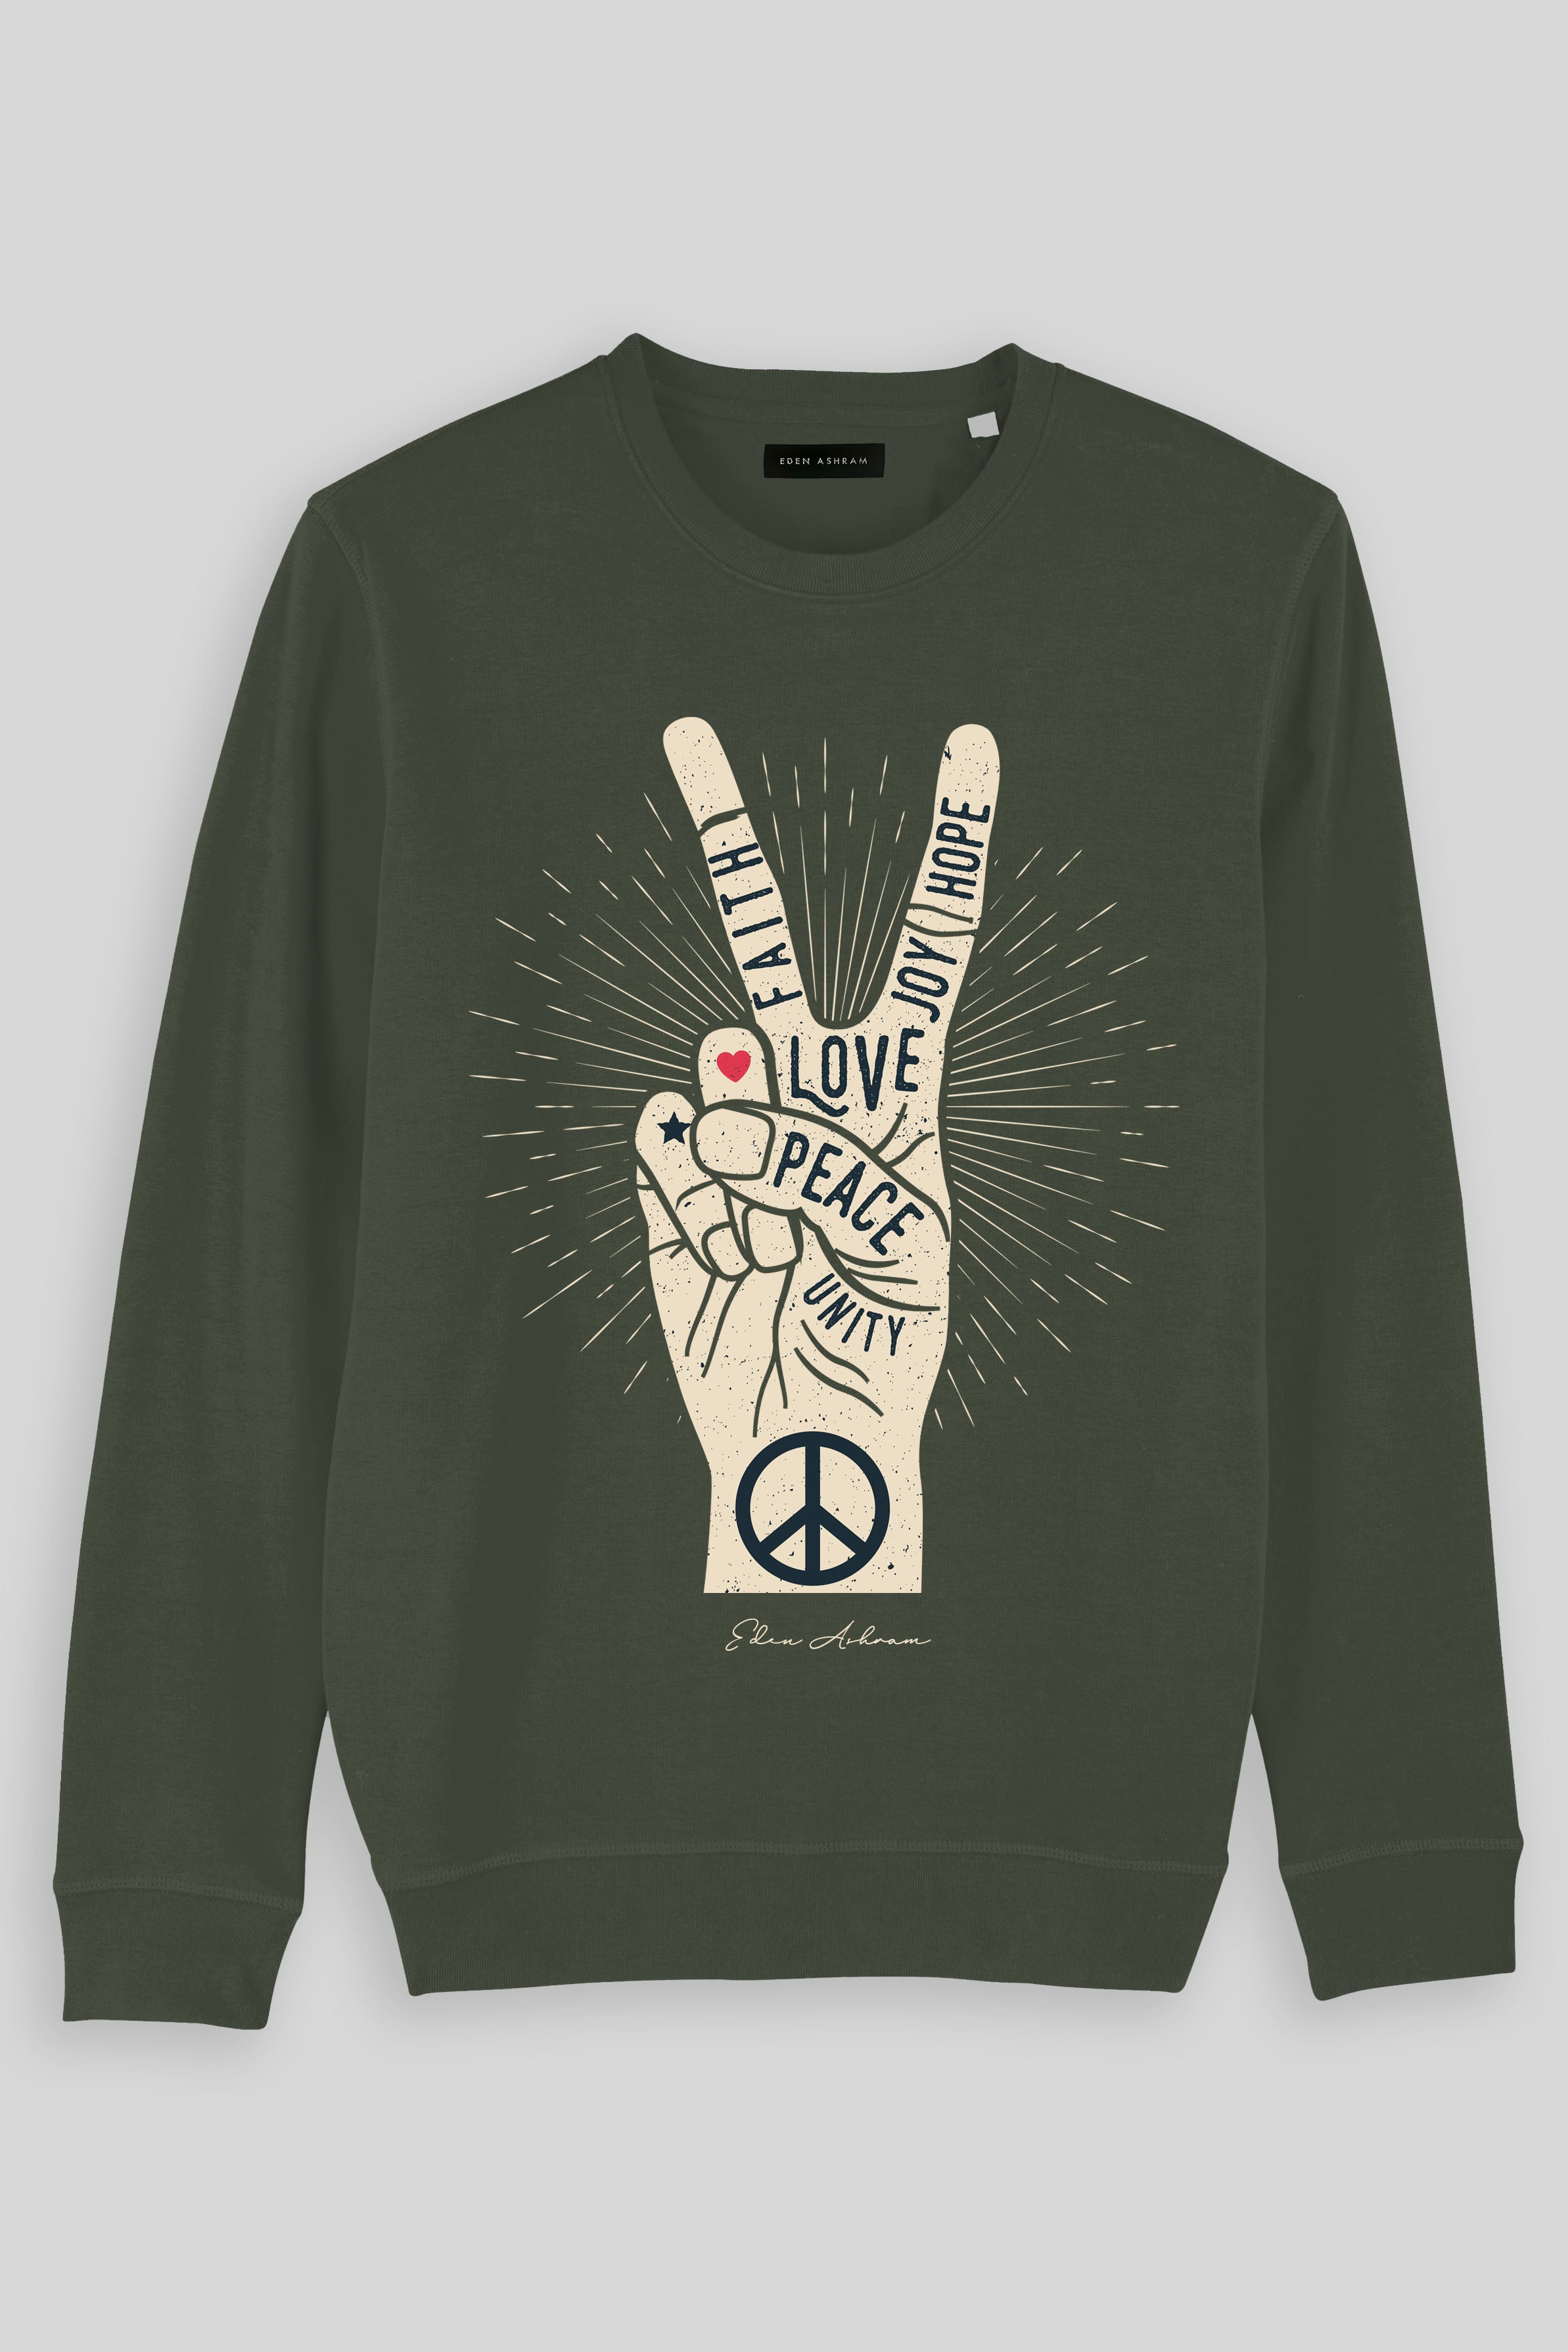 Eden Ashram Peace, Love, Unity, Faith, Joy & Hope Premium Crew Neck Sweatshirt Khaki